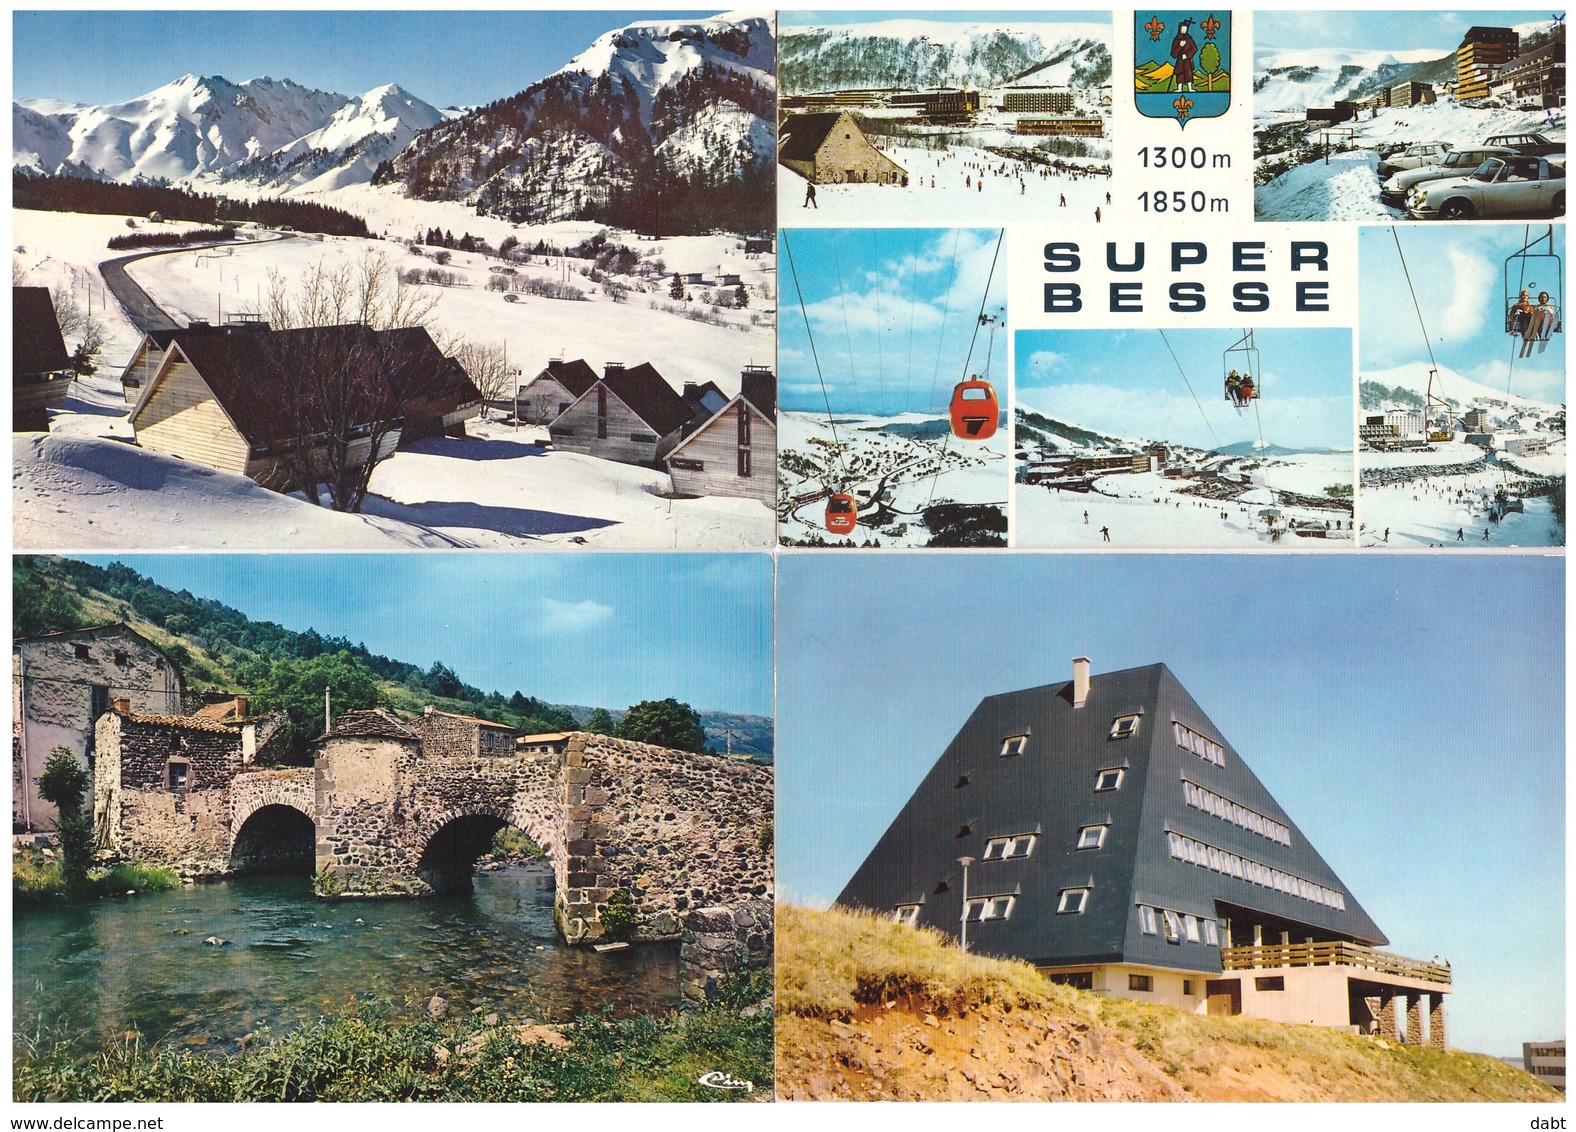 lot 910 cartes postales de France  , toutes les cartes scannées sont incluses